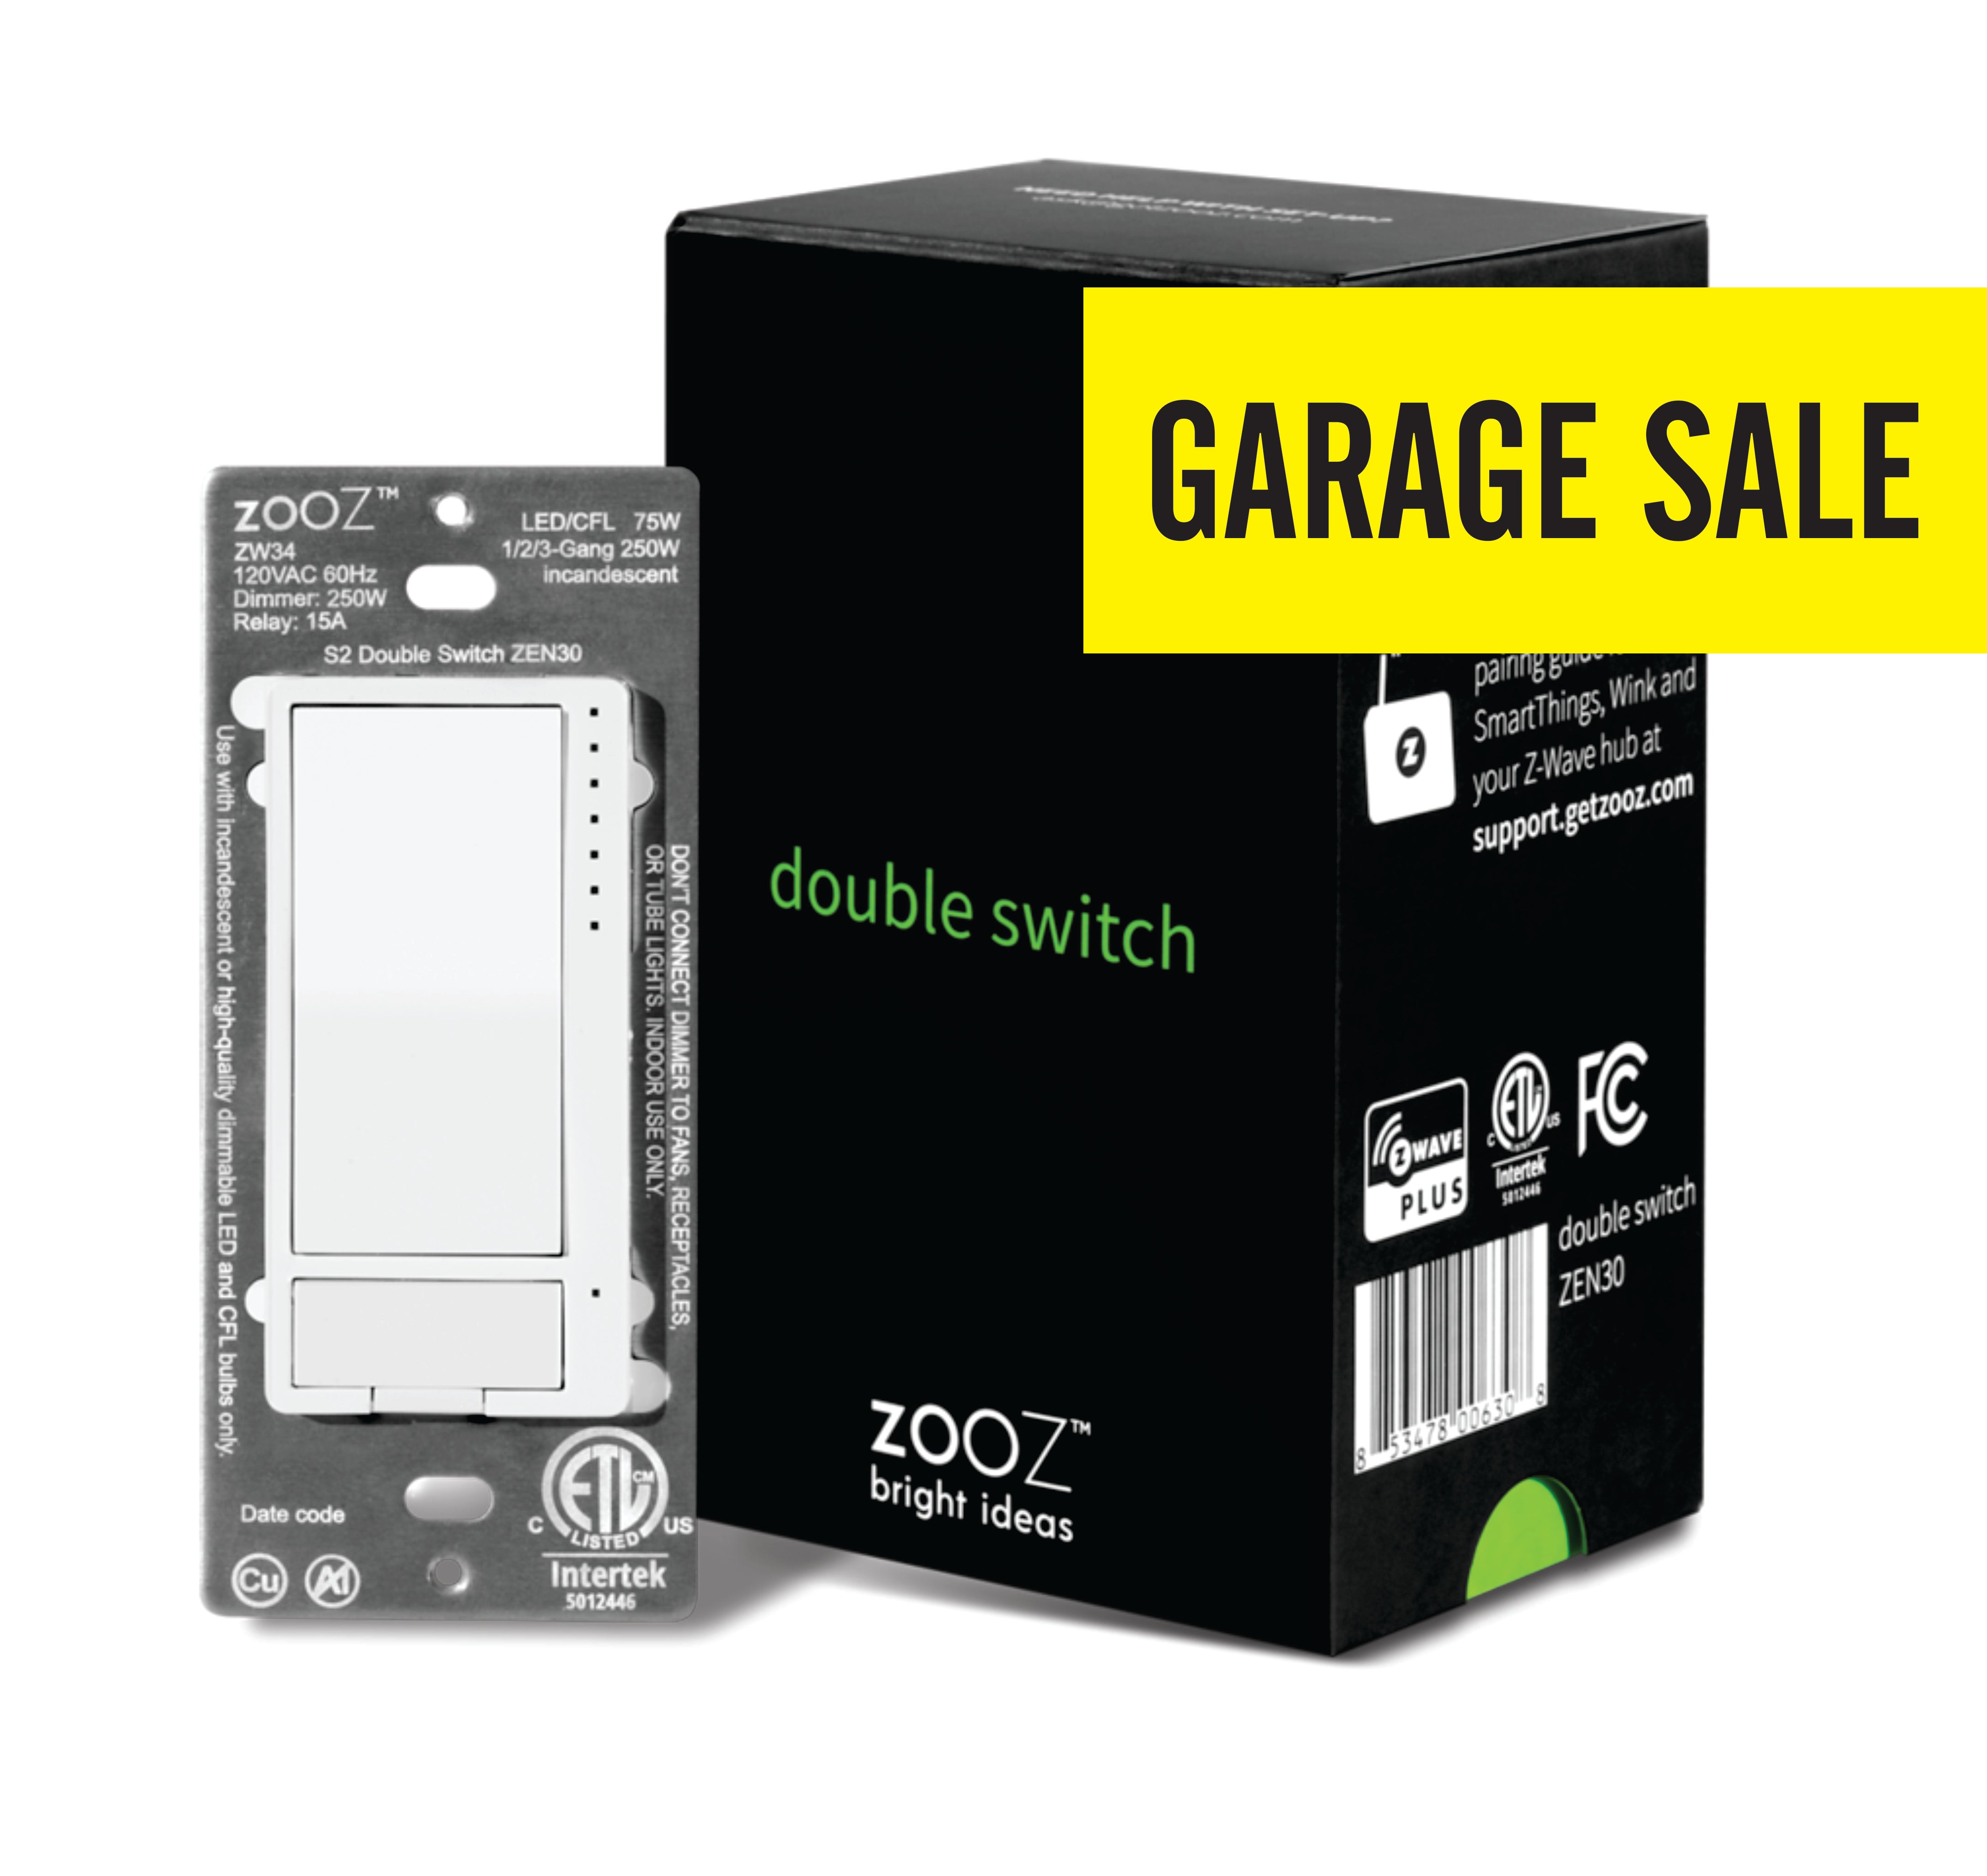 Zooz Z-Wave Plus 700 Series Double Switch ZEN30 VER. 3.0 for Light & Fan  Combo (Garage Sale)